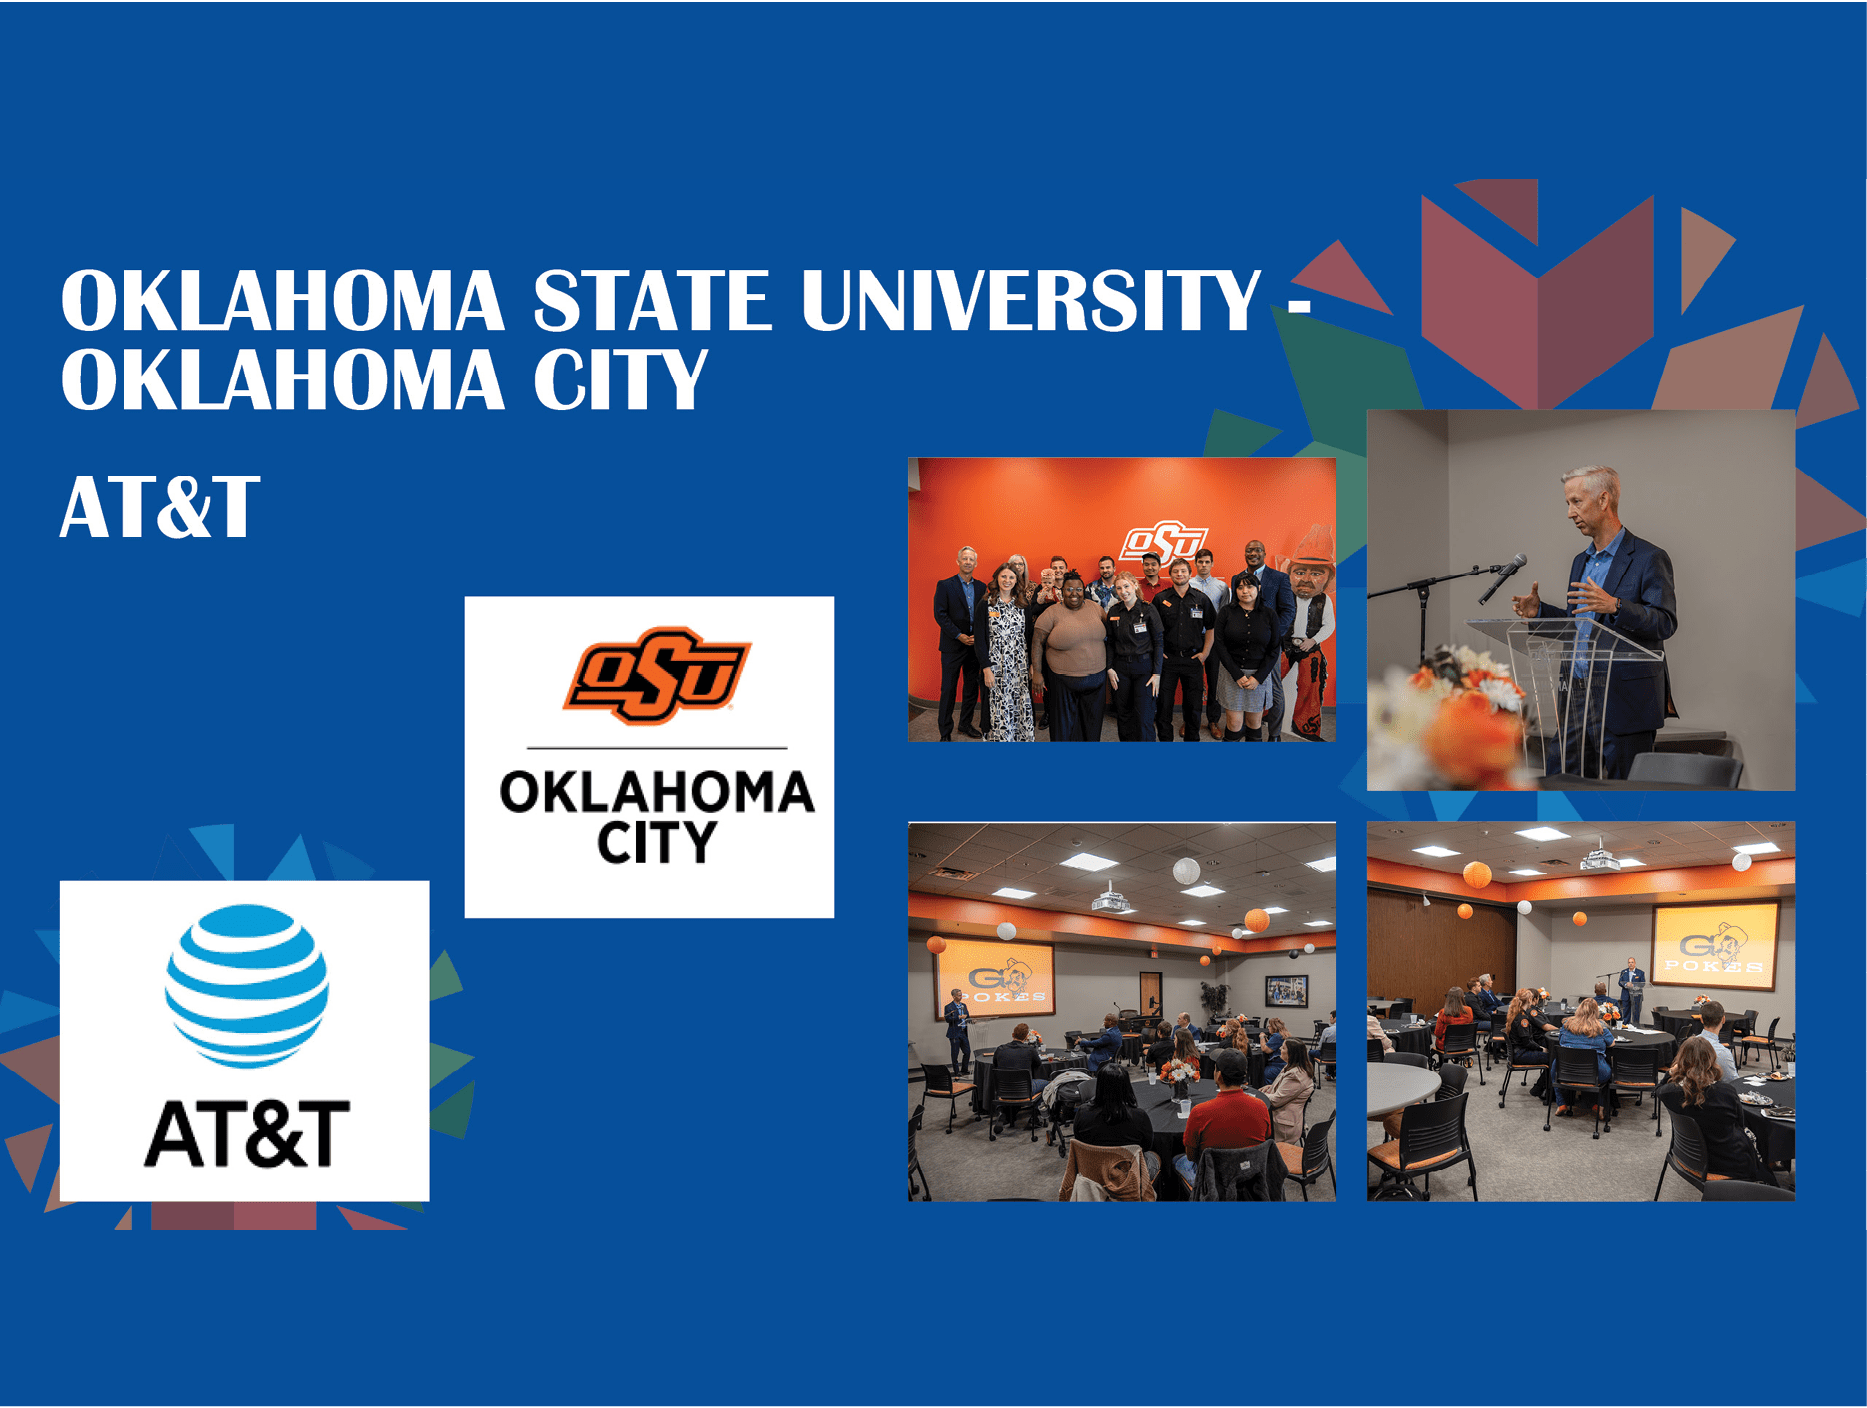 Oklahoma State University-Oklahoma City and AT&T